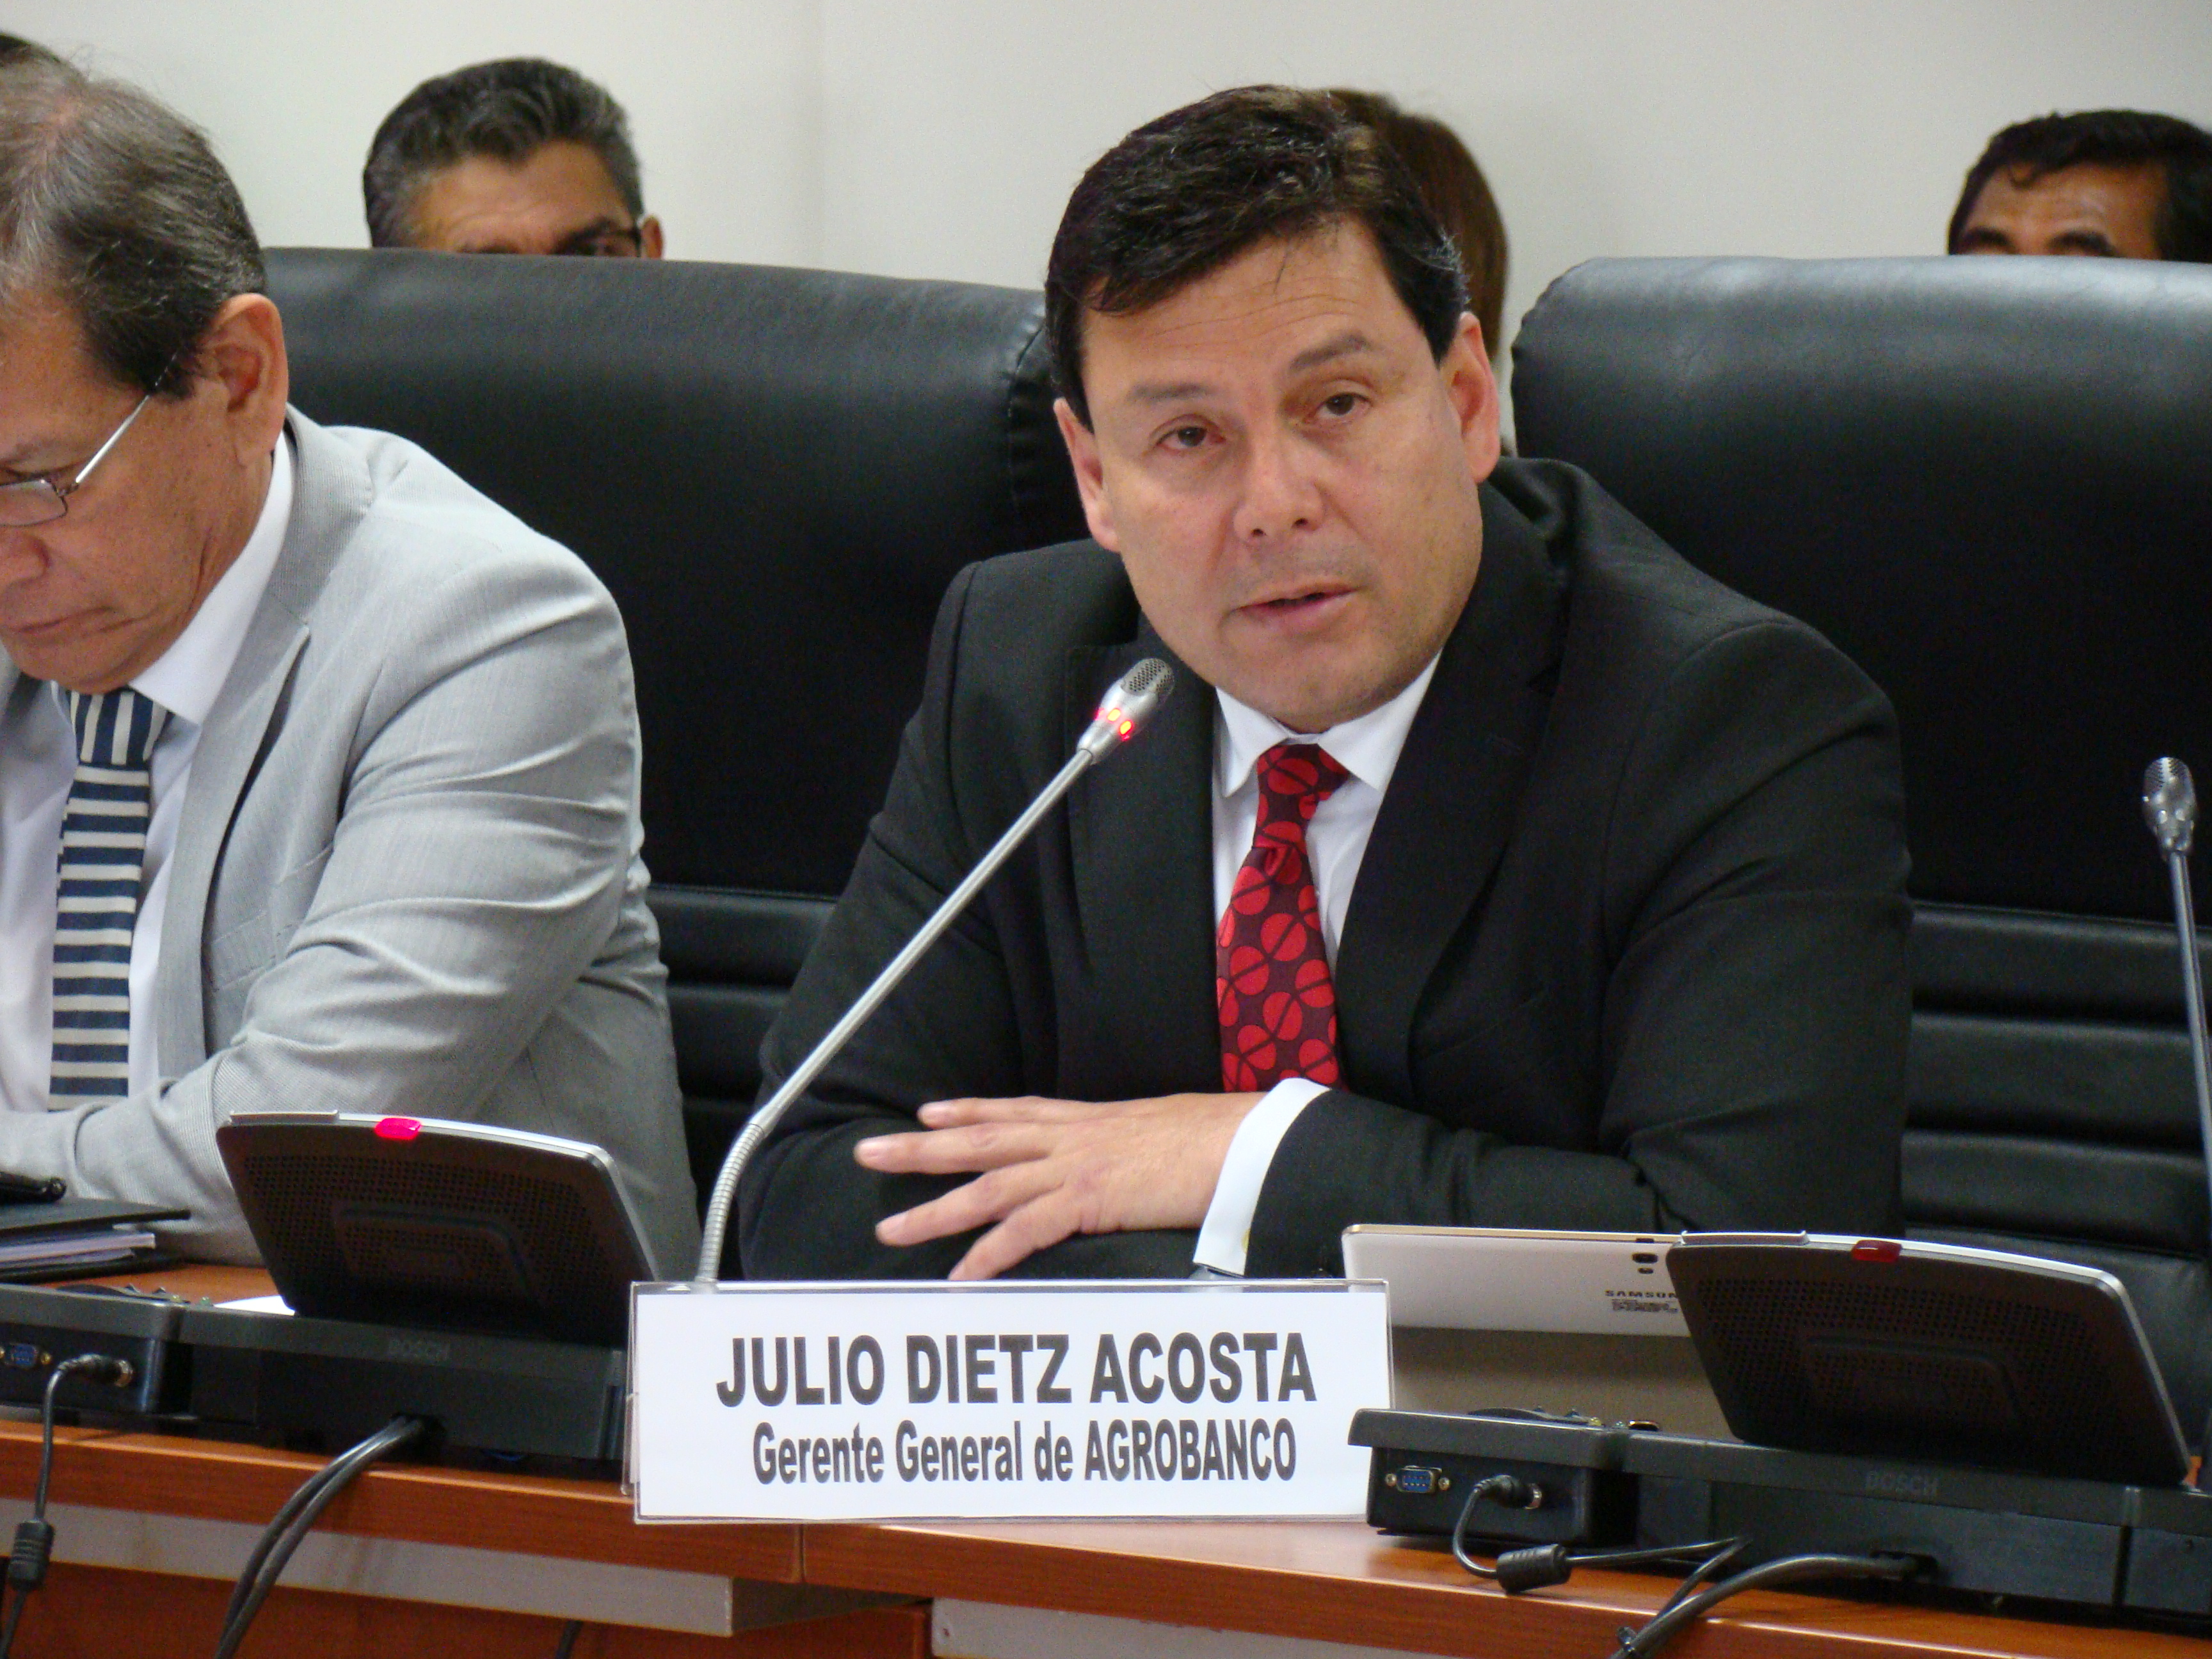 Julio Dietz Acosta, Gerente General de AGROBANCO